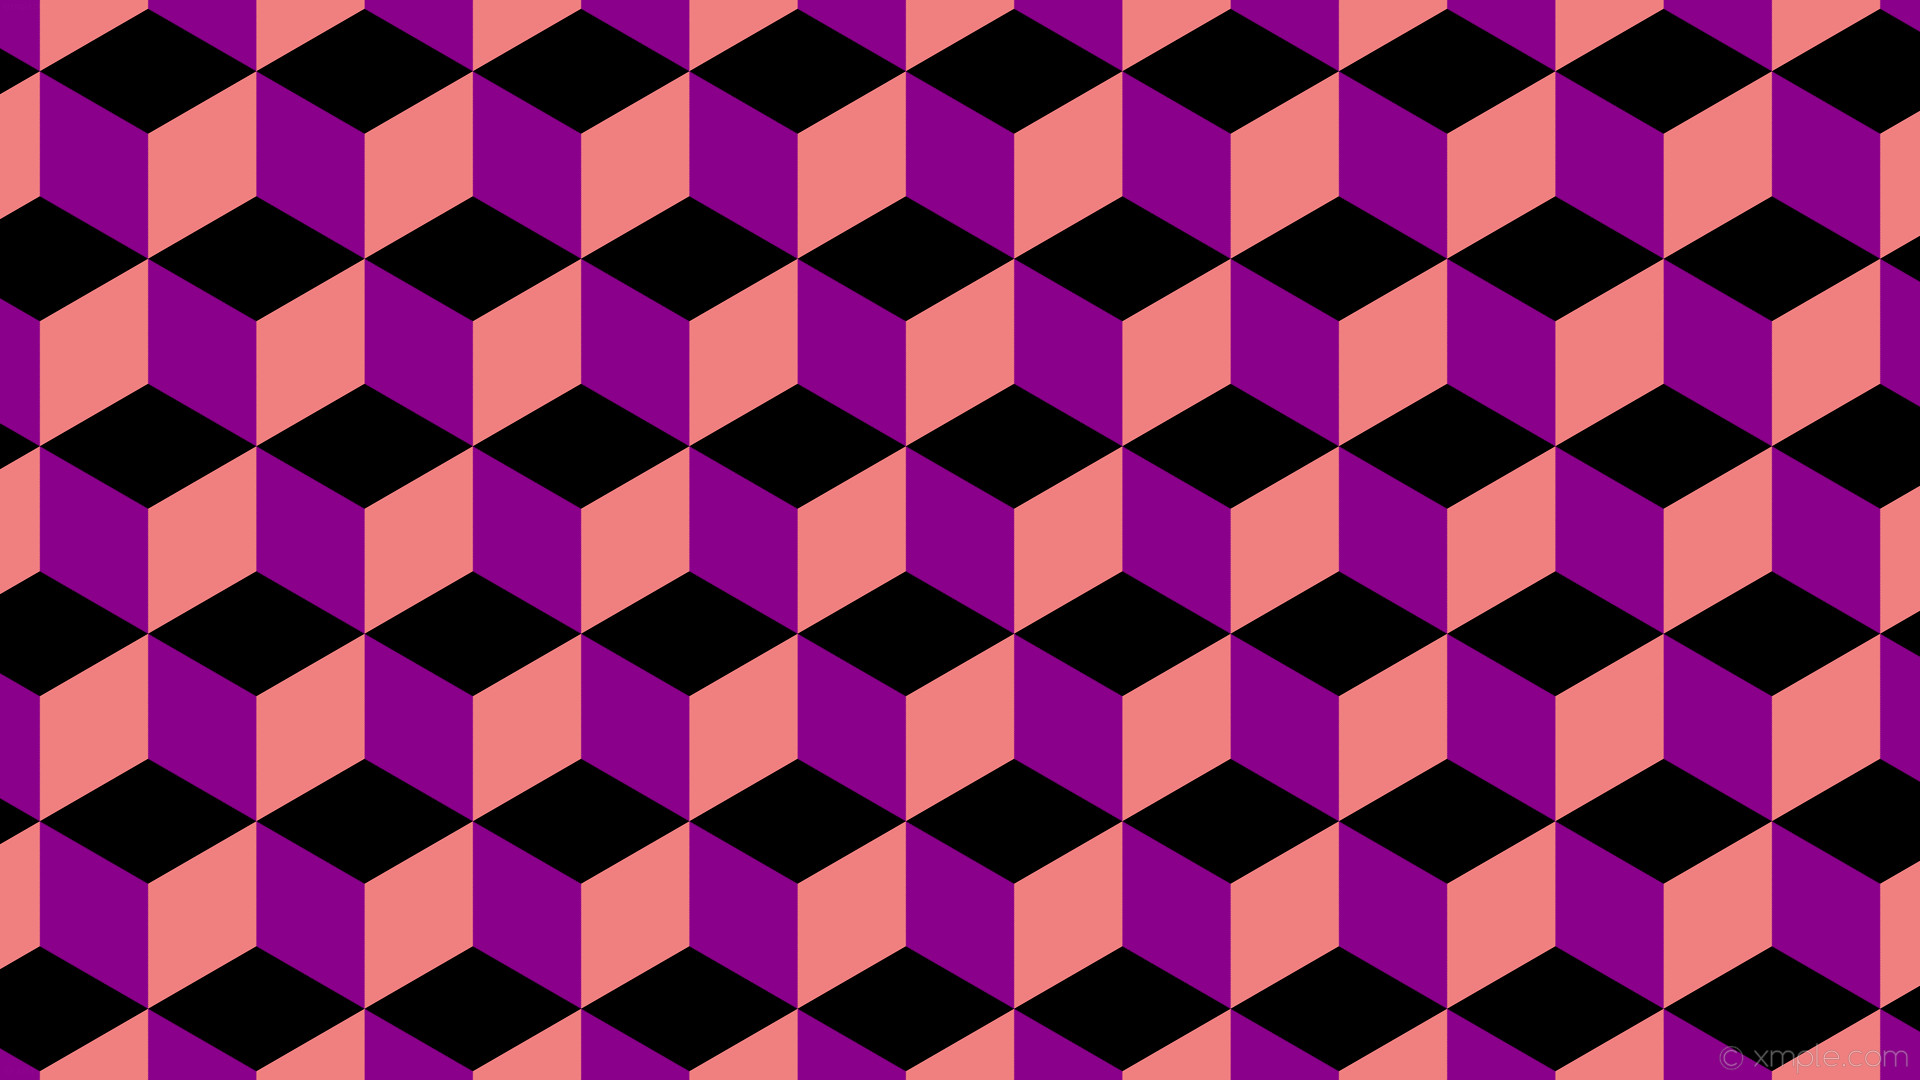 1920x1080 wallpaper red 3d cubes purple black dark magenta light coral #8b008b  #f08080 #000000